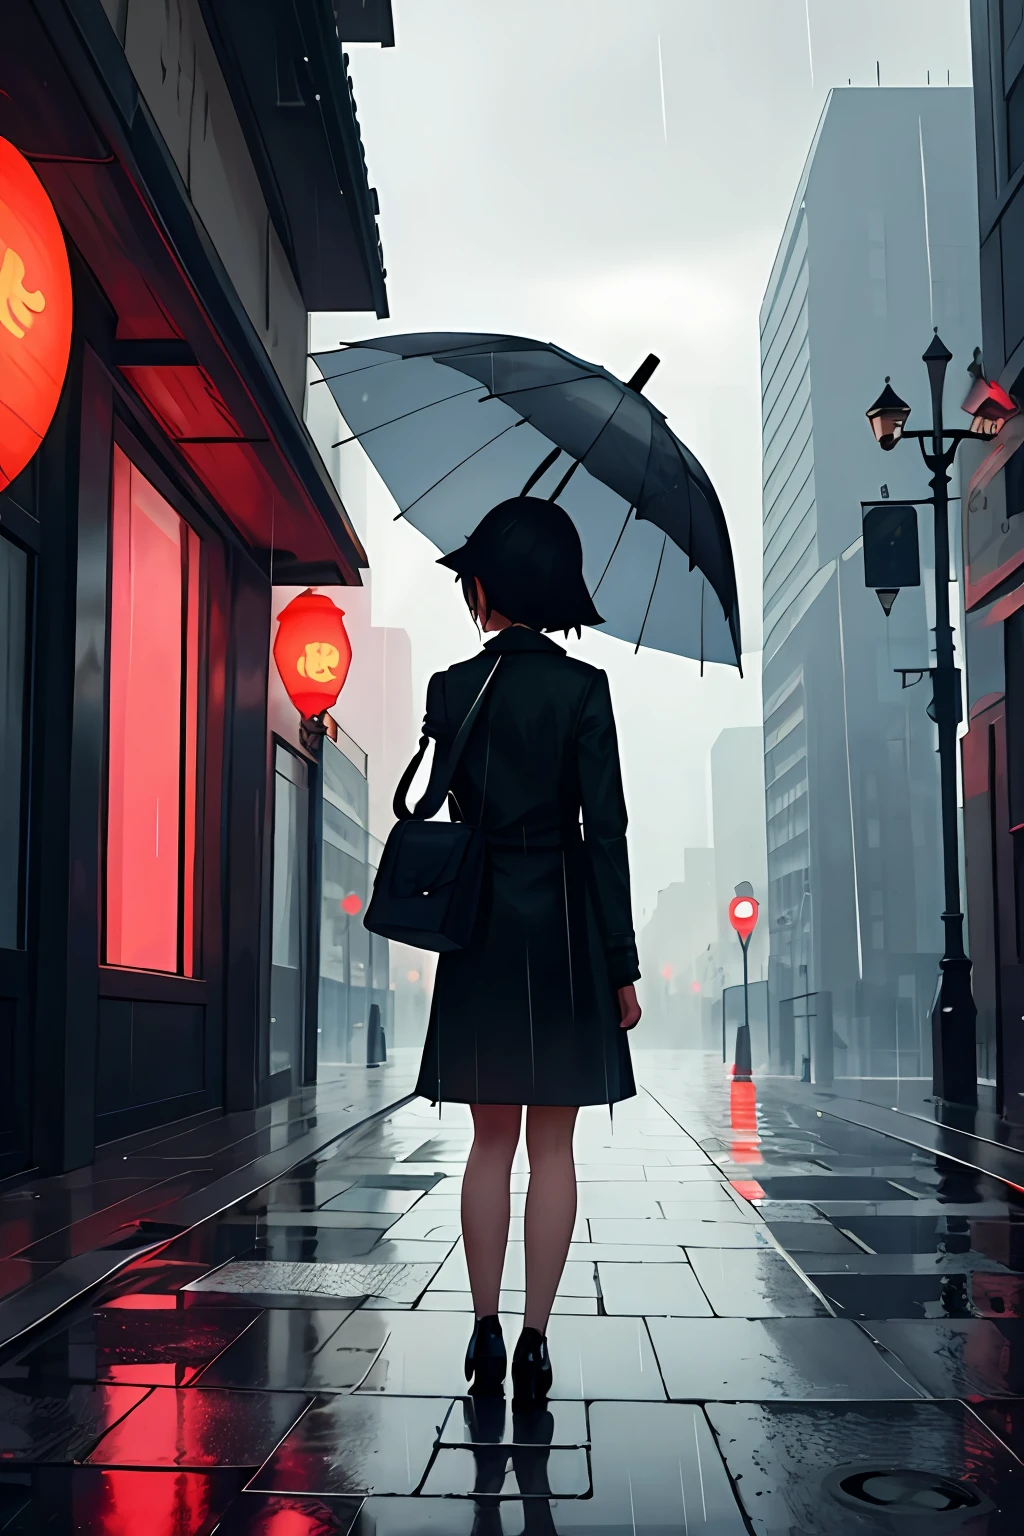 Meisterwerk,beste Qualität,1 Mädchen, Stadt,Landschaft,Regen,Regenschirm,hinterrücks